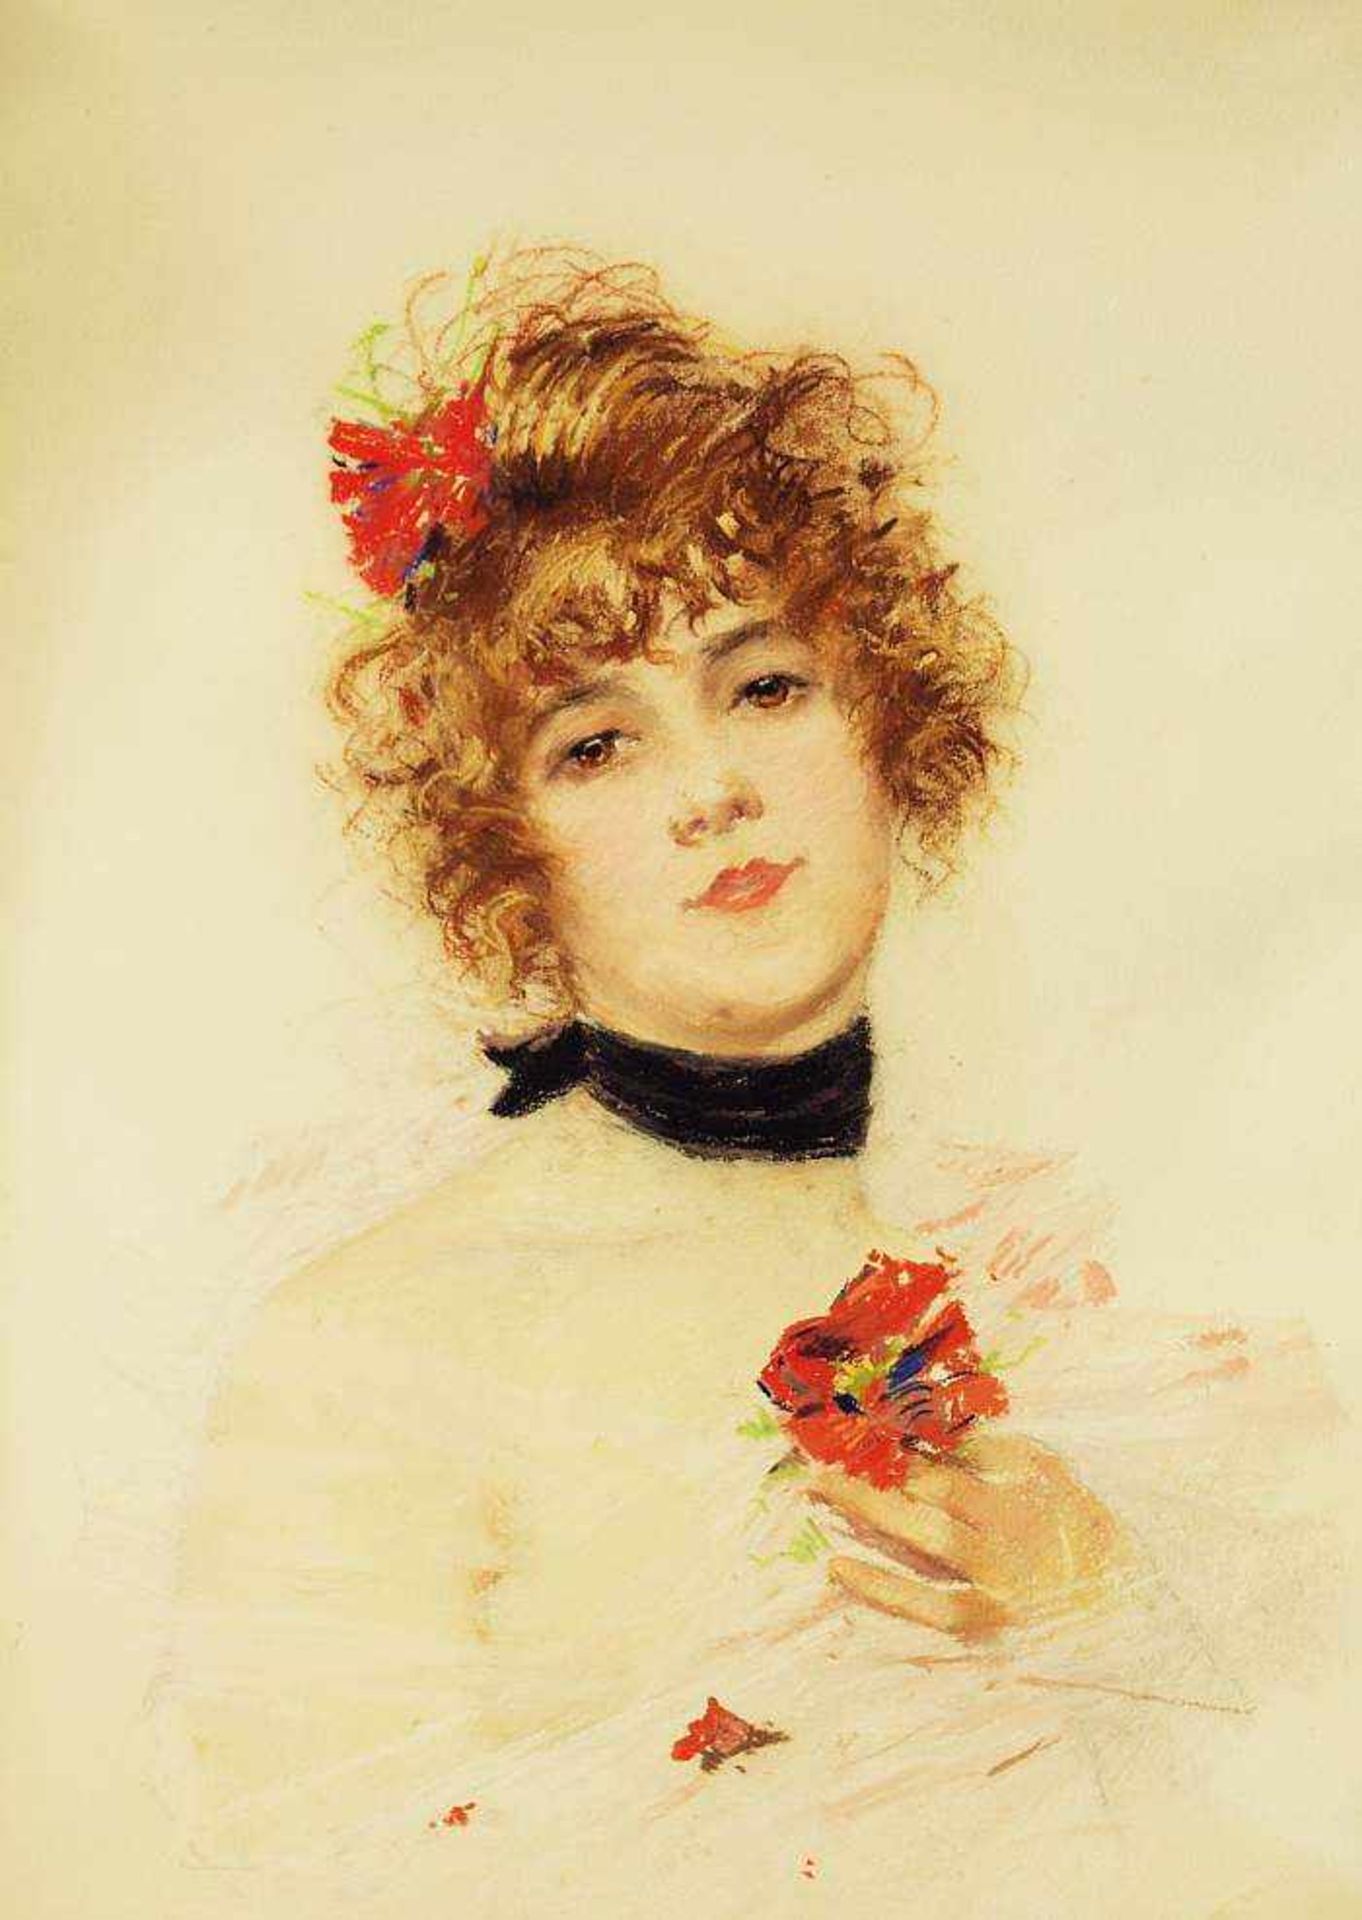 Französische Tänzerin mit Blüte im Haar und in linker Hand.Französische Tänzerin mit Blüte im Haar